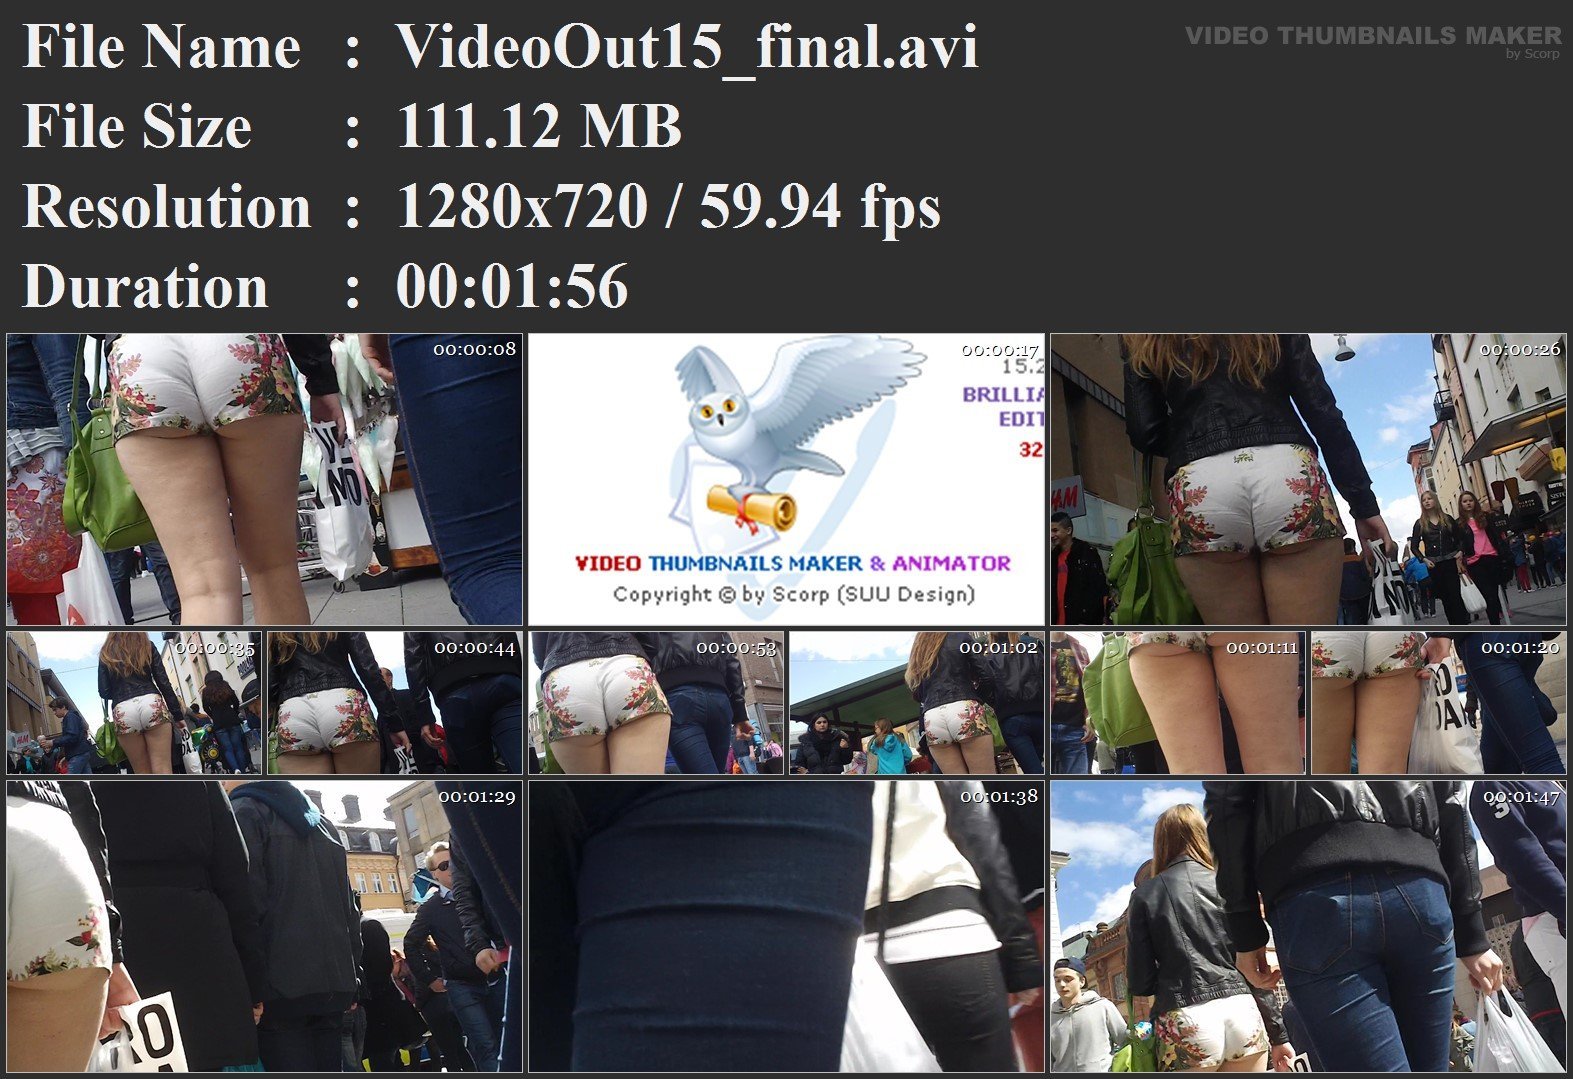 VideoOut15_final.avi.jpg